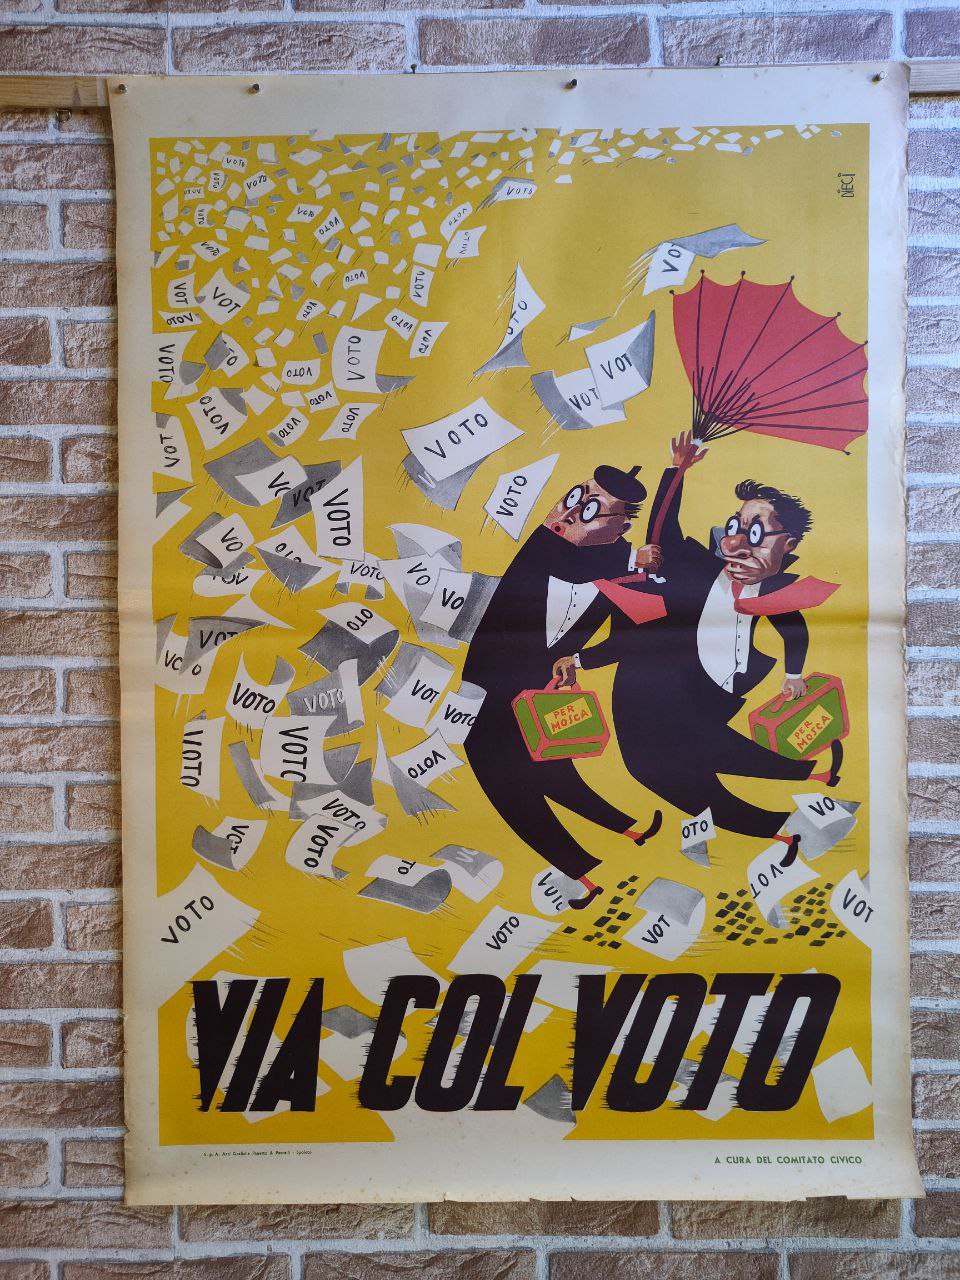 Manifesto originale pubblicitario - Via col voto, Comitato Civico